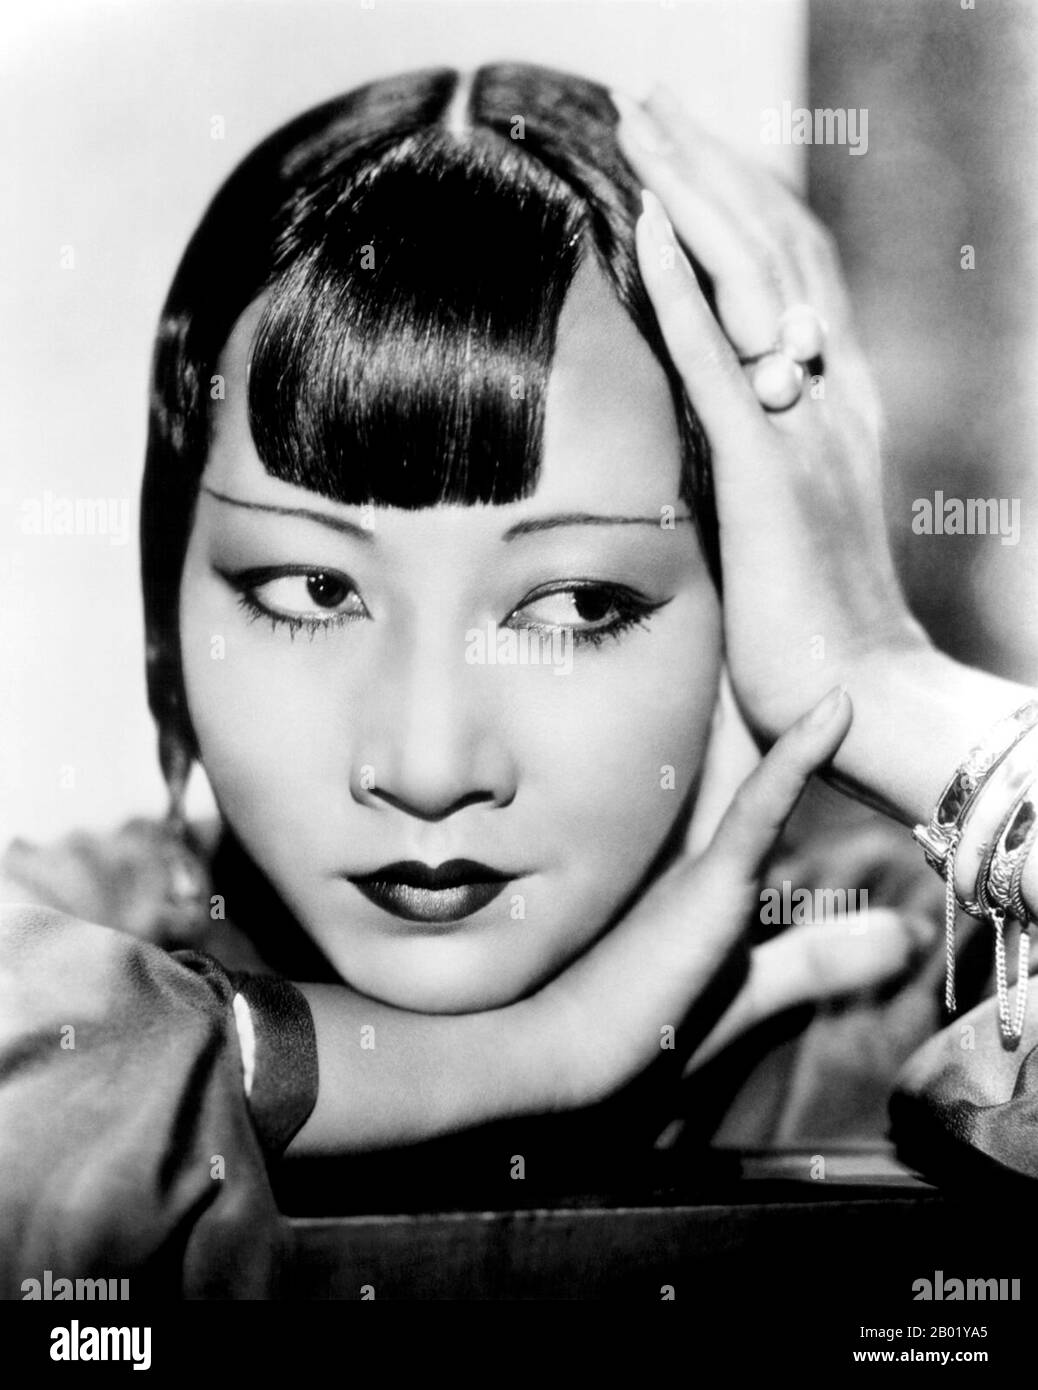 Anna May Wong (3 gennaio 1905 – 3 febbraio 1961) è stata una . La sua lunga e varia carriera ha abbracciato sia film silenti che sonori, televisione, palcoscenico e radio. Nato vicino al quartiere di Chinatown di Los Angeles ai genitori cinesi-americani di seconda generazione, Wong è diventato infatuato con i film e ha iniziato ad agire in film ad una prima età. Durante l'era silenziosa del film, ha agito nel Toll of the Sea (1922), uno dei primi film realizzati a colori e Douglas Fairbanks 'il ladro di Bagda Foto Stock